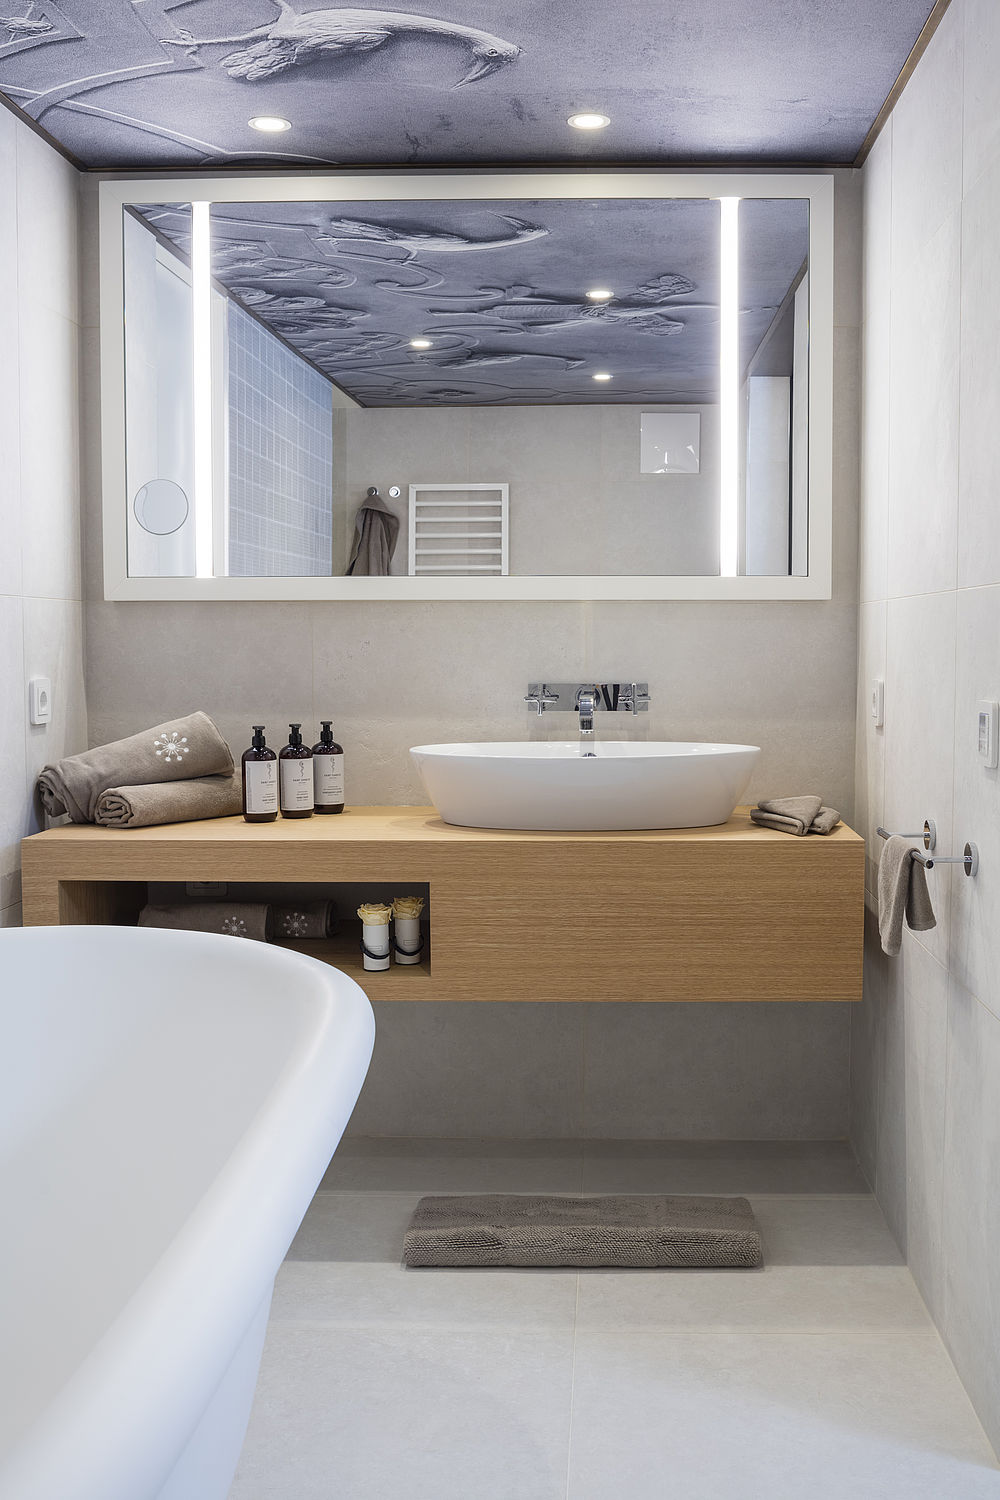 Helles Badezimmer mit großem Spiegel, freistehender Badewanne und bereitgestellten Handtüchern und Pflegeprodukten auf dem Waschbecken